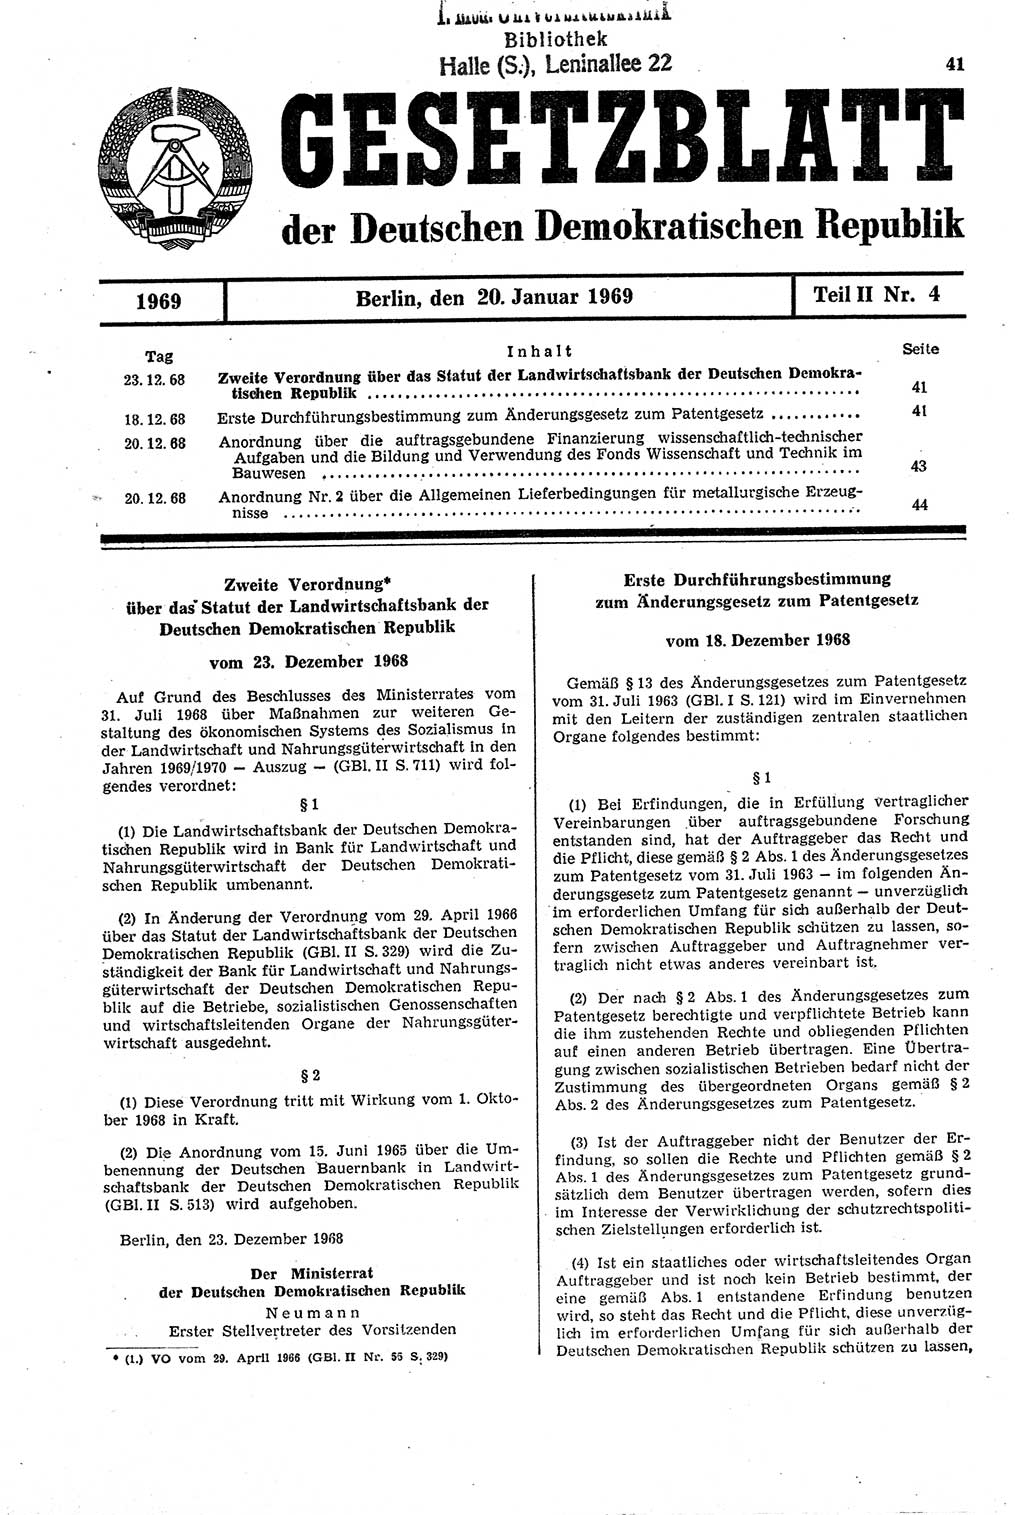 Gesetzblatt (GBl.) der Deutschen Demokratischen Republik (DDR) Teil ⅠⅠ 1969, Seite 41 (GBl. DDR ⅠⅠ 1969, S. 41)